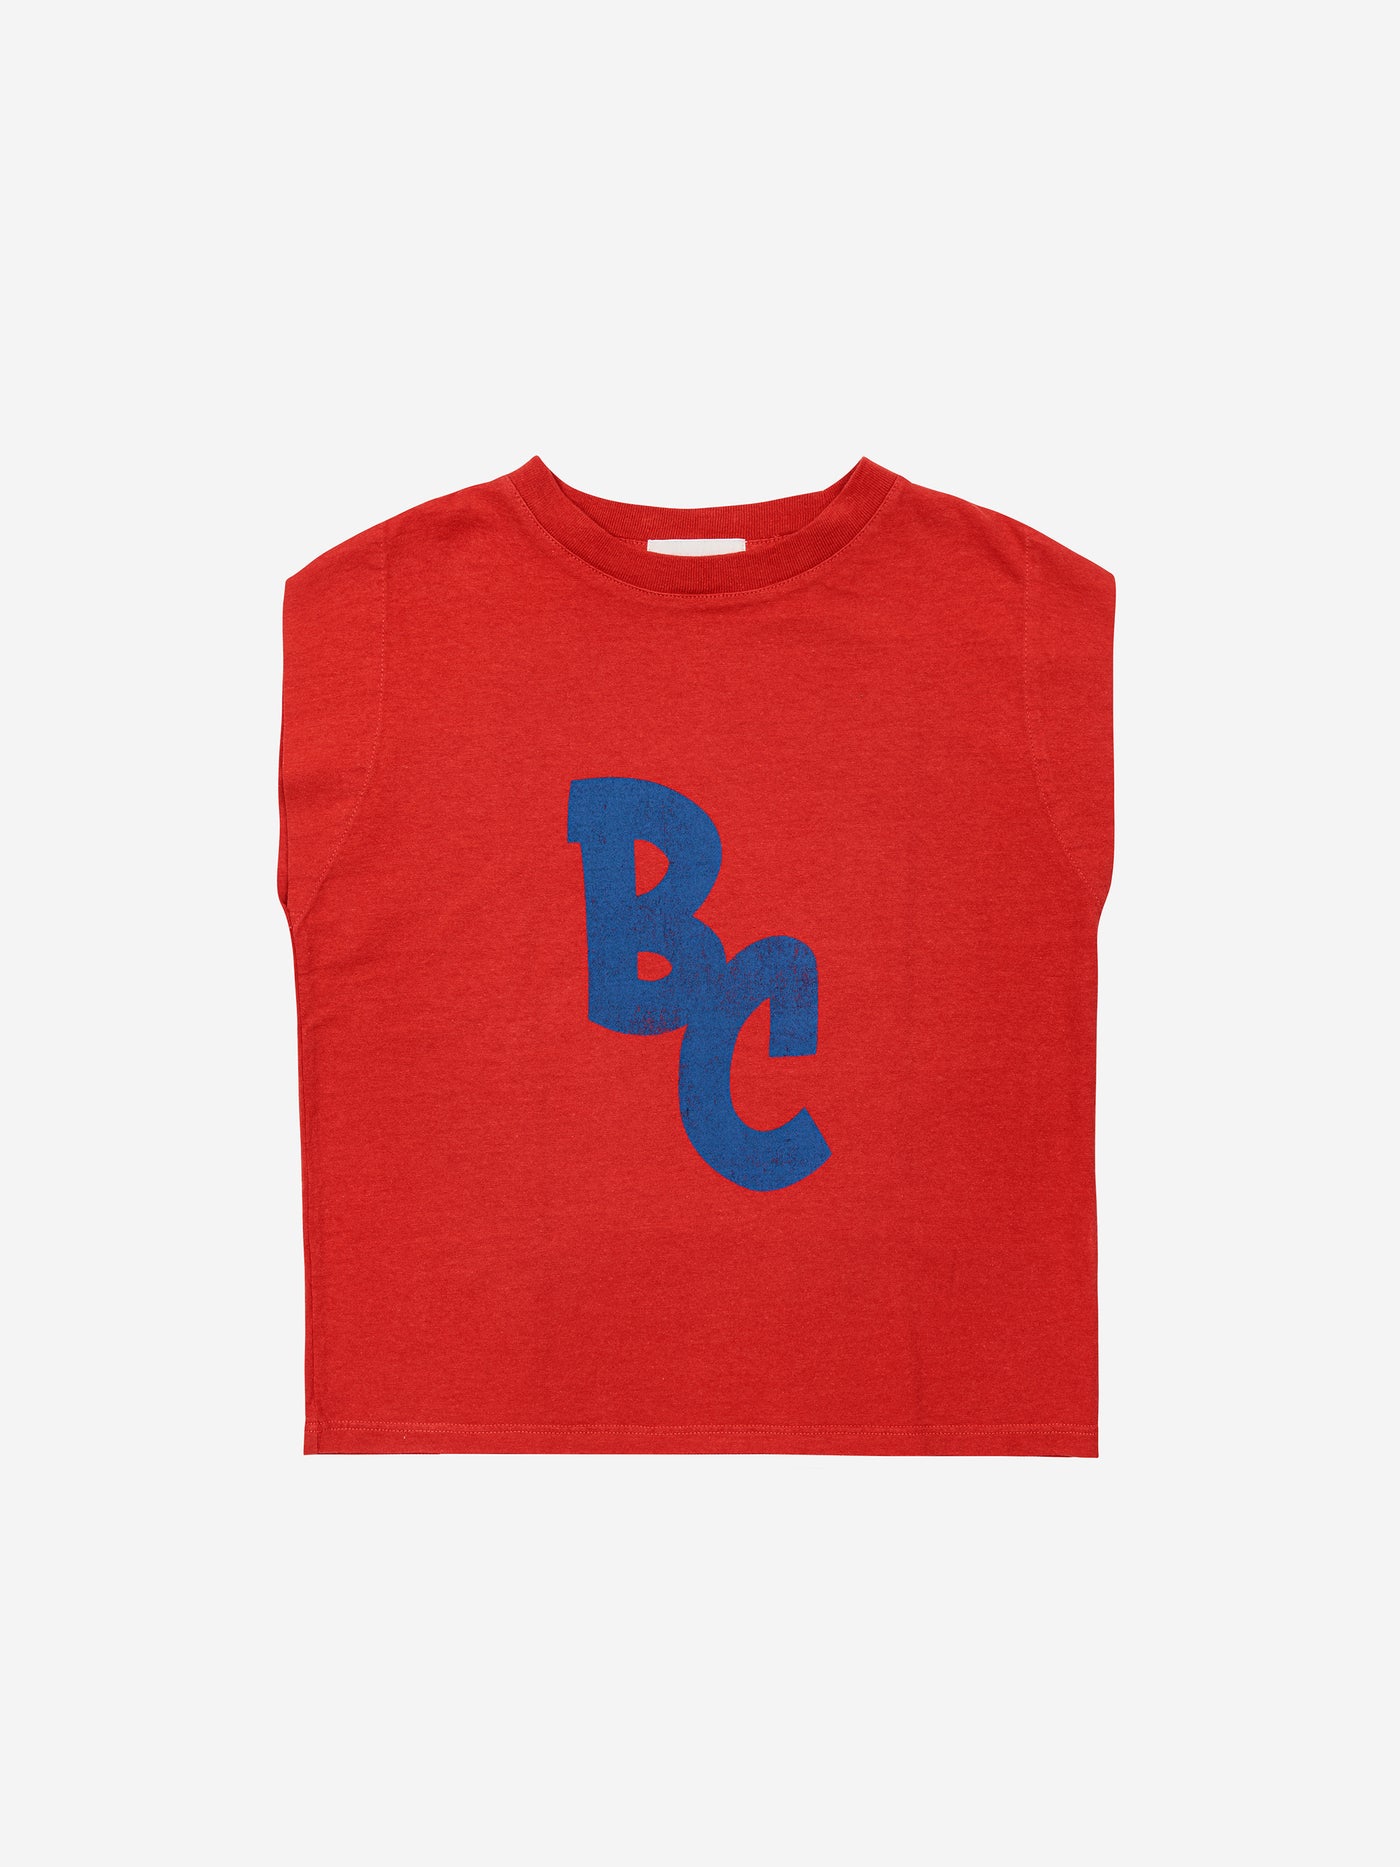 Bobo Choses - T-shirt mit Bobo-Logo 'BC tank top'